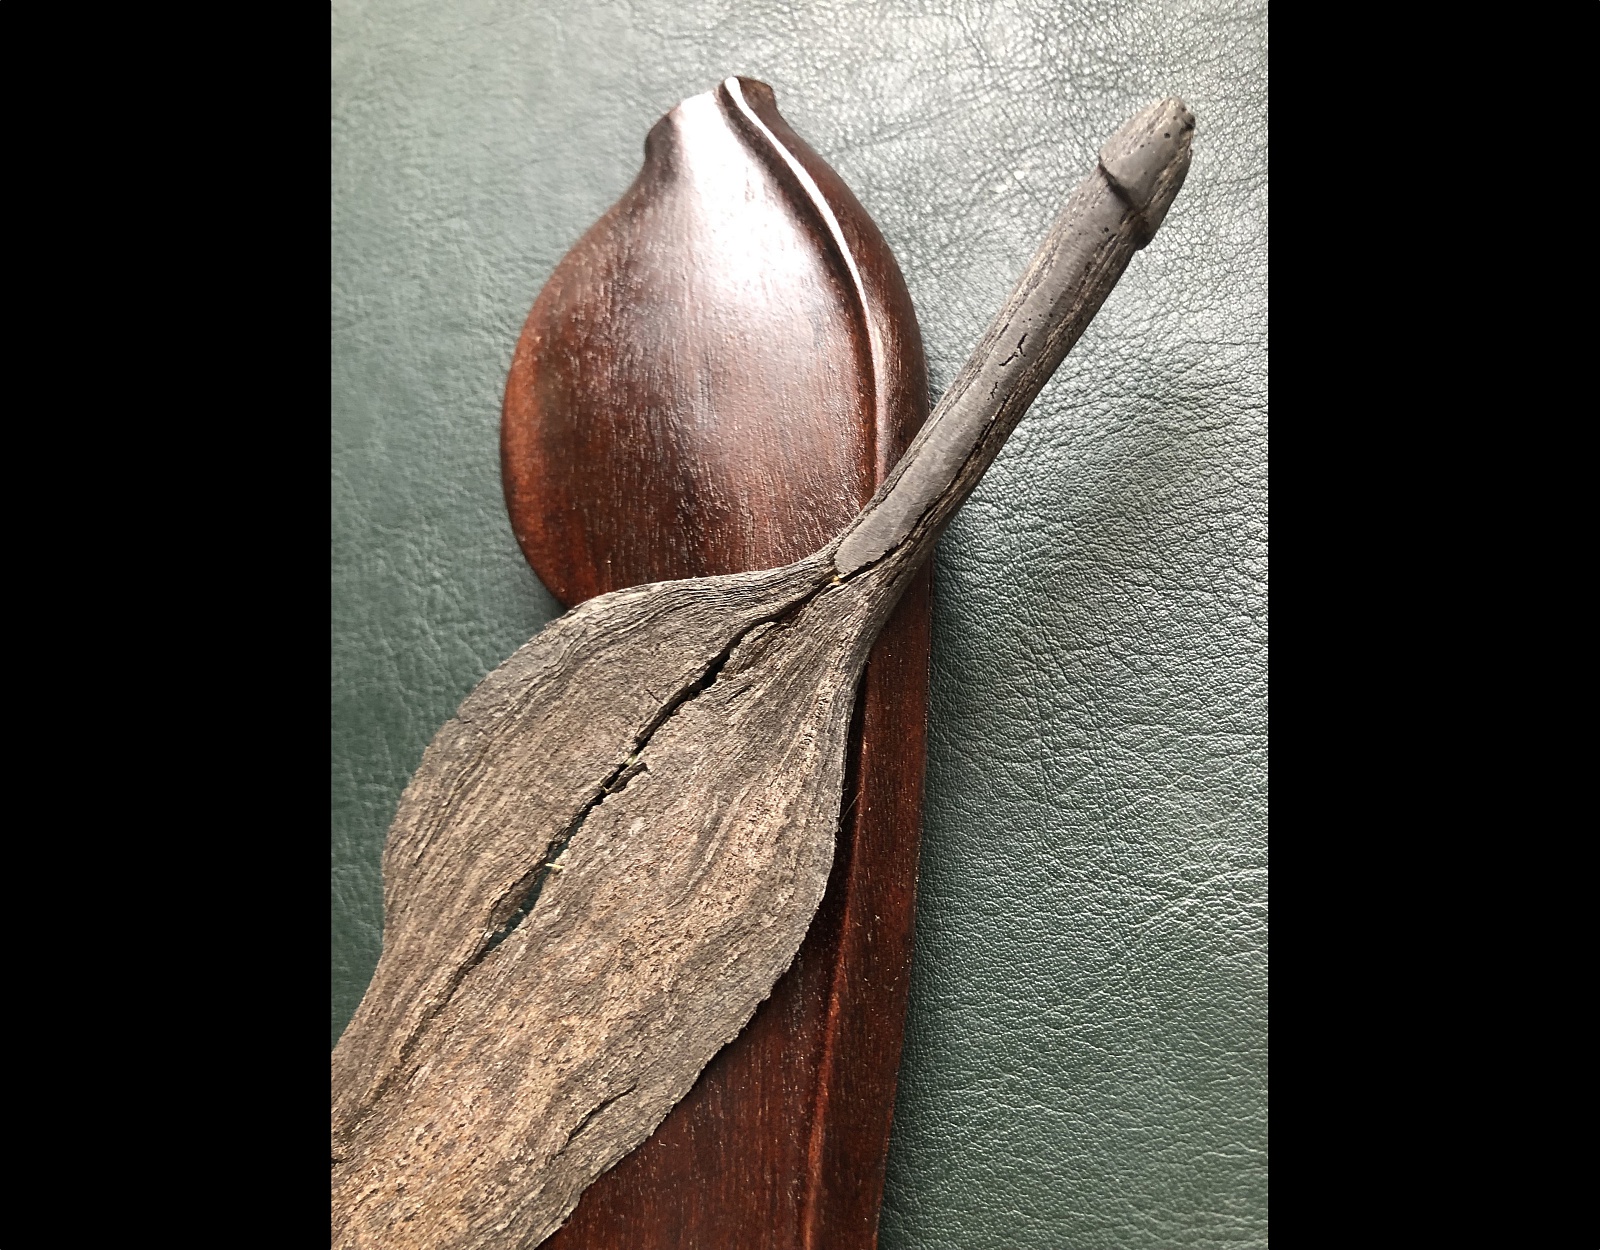 Нож Крис Sajen Kudi, Яньский артефакт. фото VipKeris